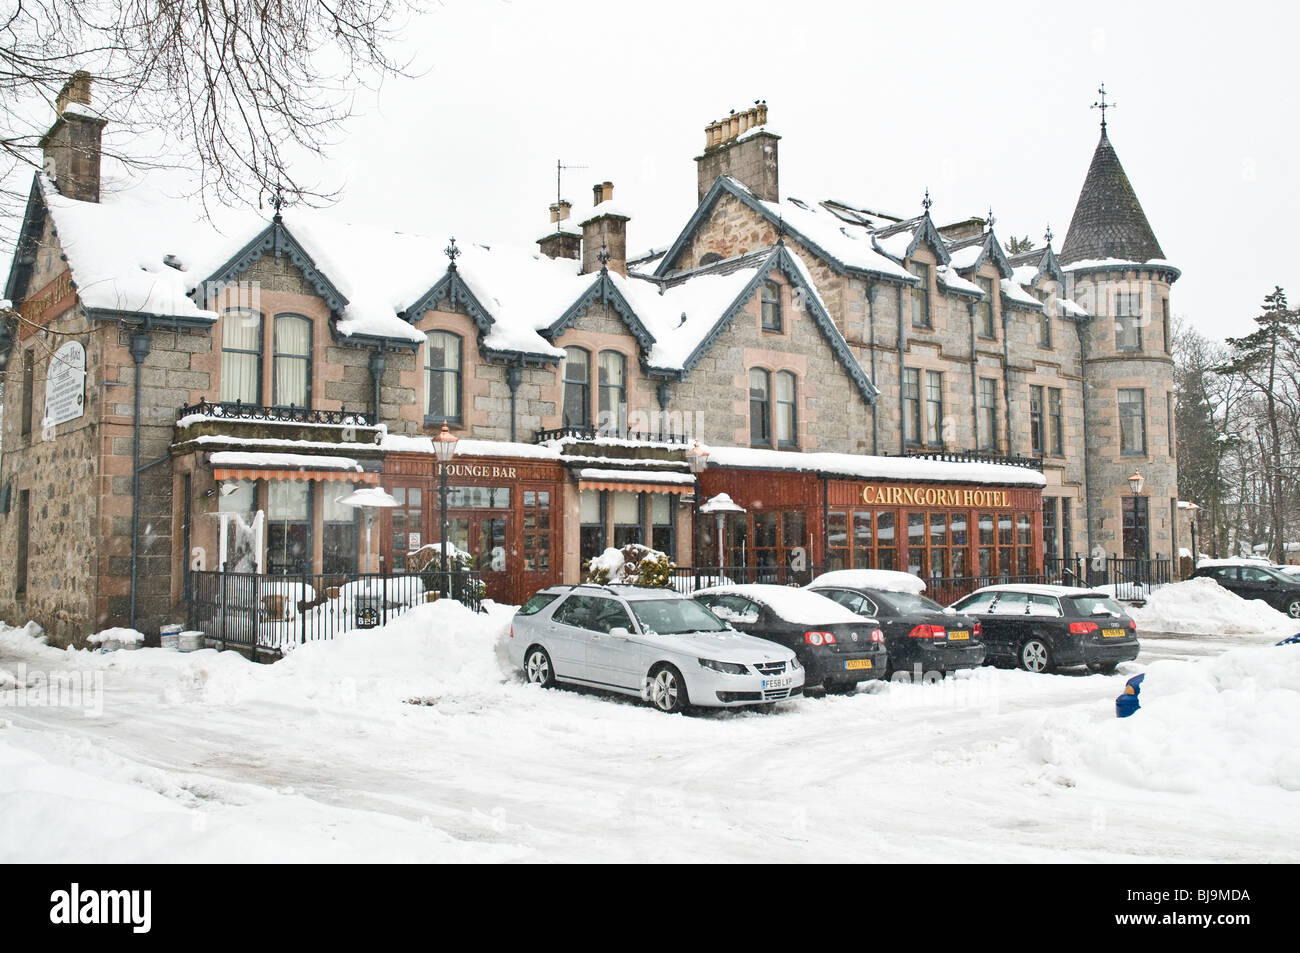 dh Cairngorm hotel Scozia AVIEMORE INVERNESSSHIRE costruzione inverno neve vacanza hotel nelle stazioni sciistiche del regno unito Foto Stock